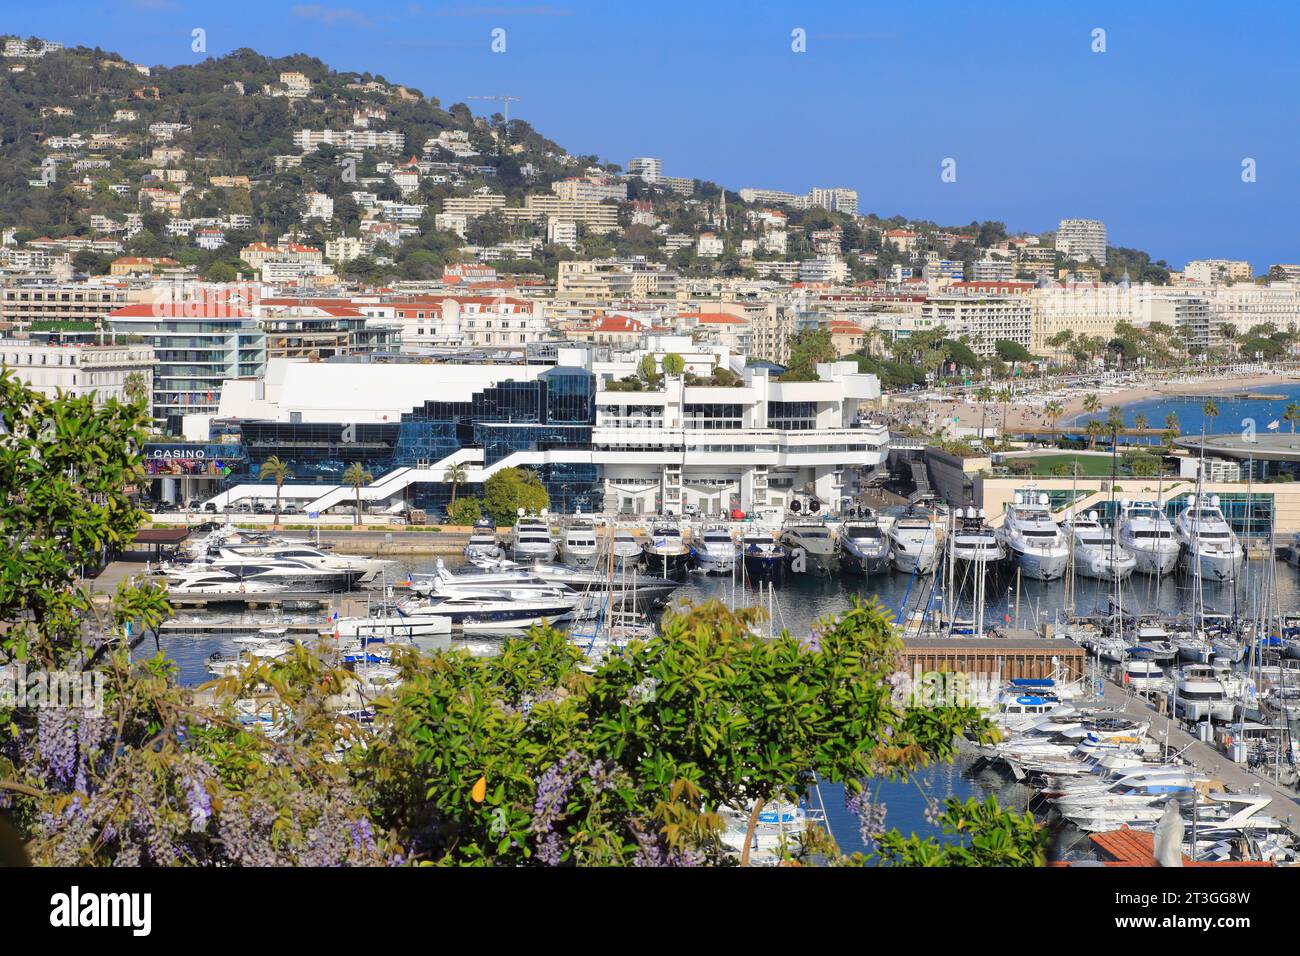 France, Alpes Maritimes, Cannes, vue depuis le Suquet sur le Vieux Port, ses bateaux amarrés, le Palais des festivals et des Congrès Banque D'Images